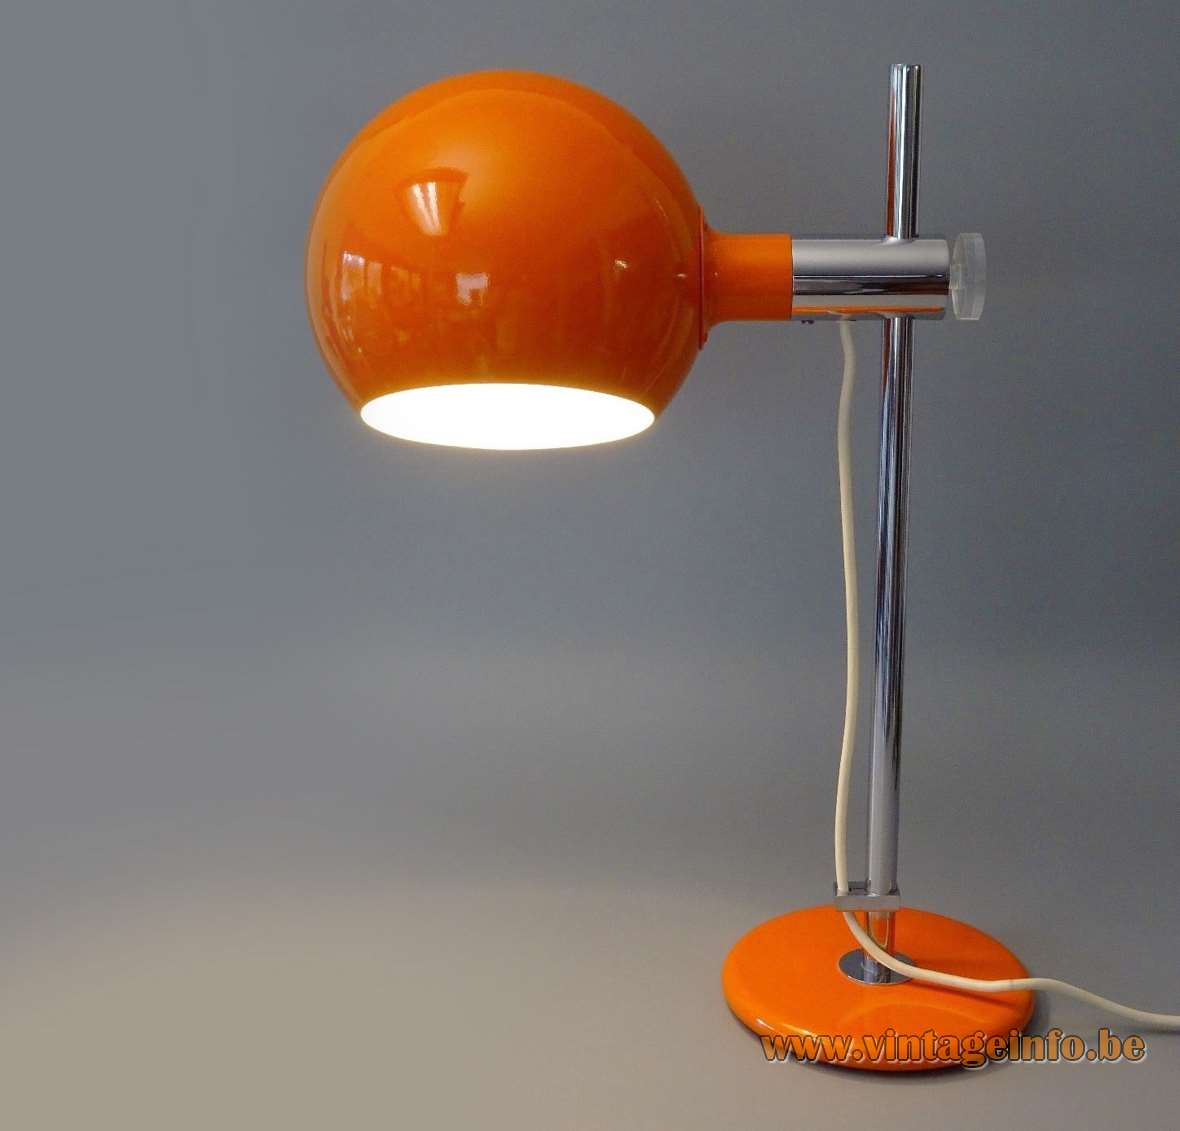 1970s Cosack globe desk lamp orange lampshade & base chrome rod acrylic adjustment screw Germany